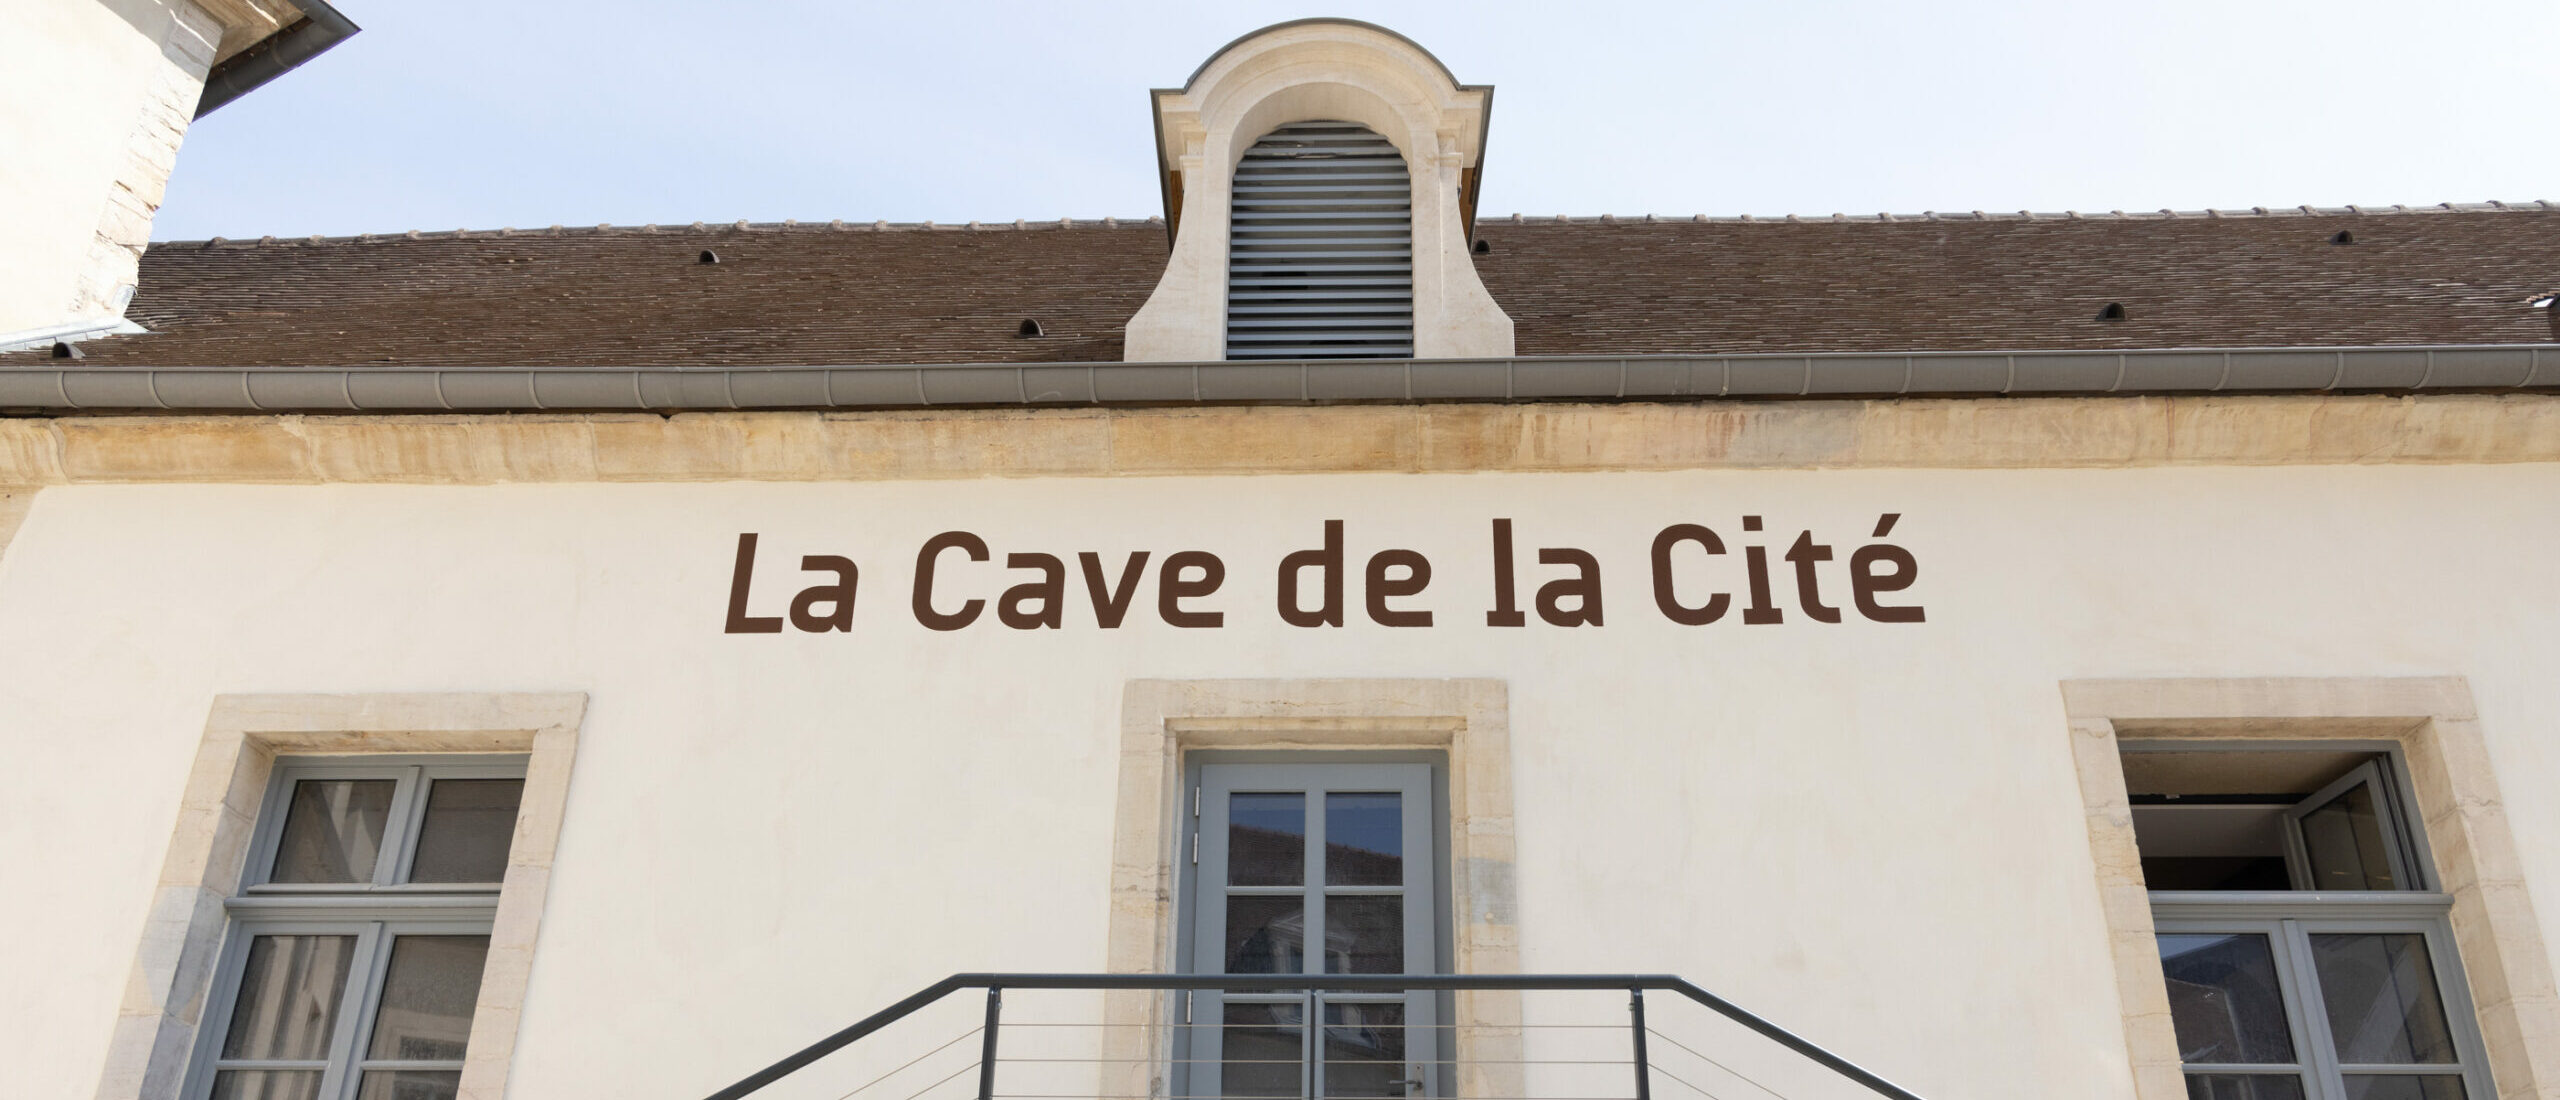 LA CAVE DE LA CITE - Crédits Christophe Fouquin - 99